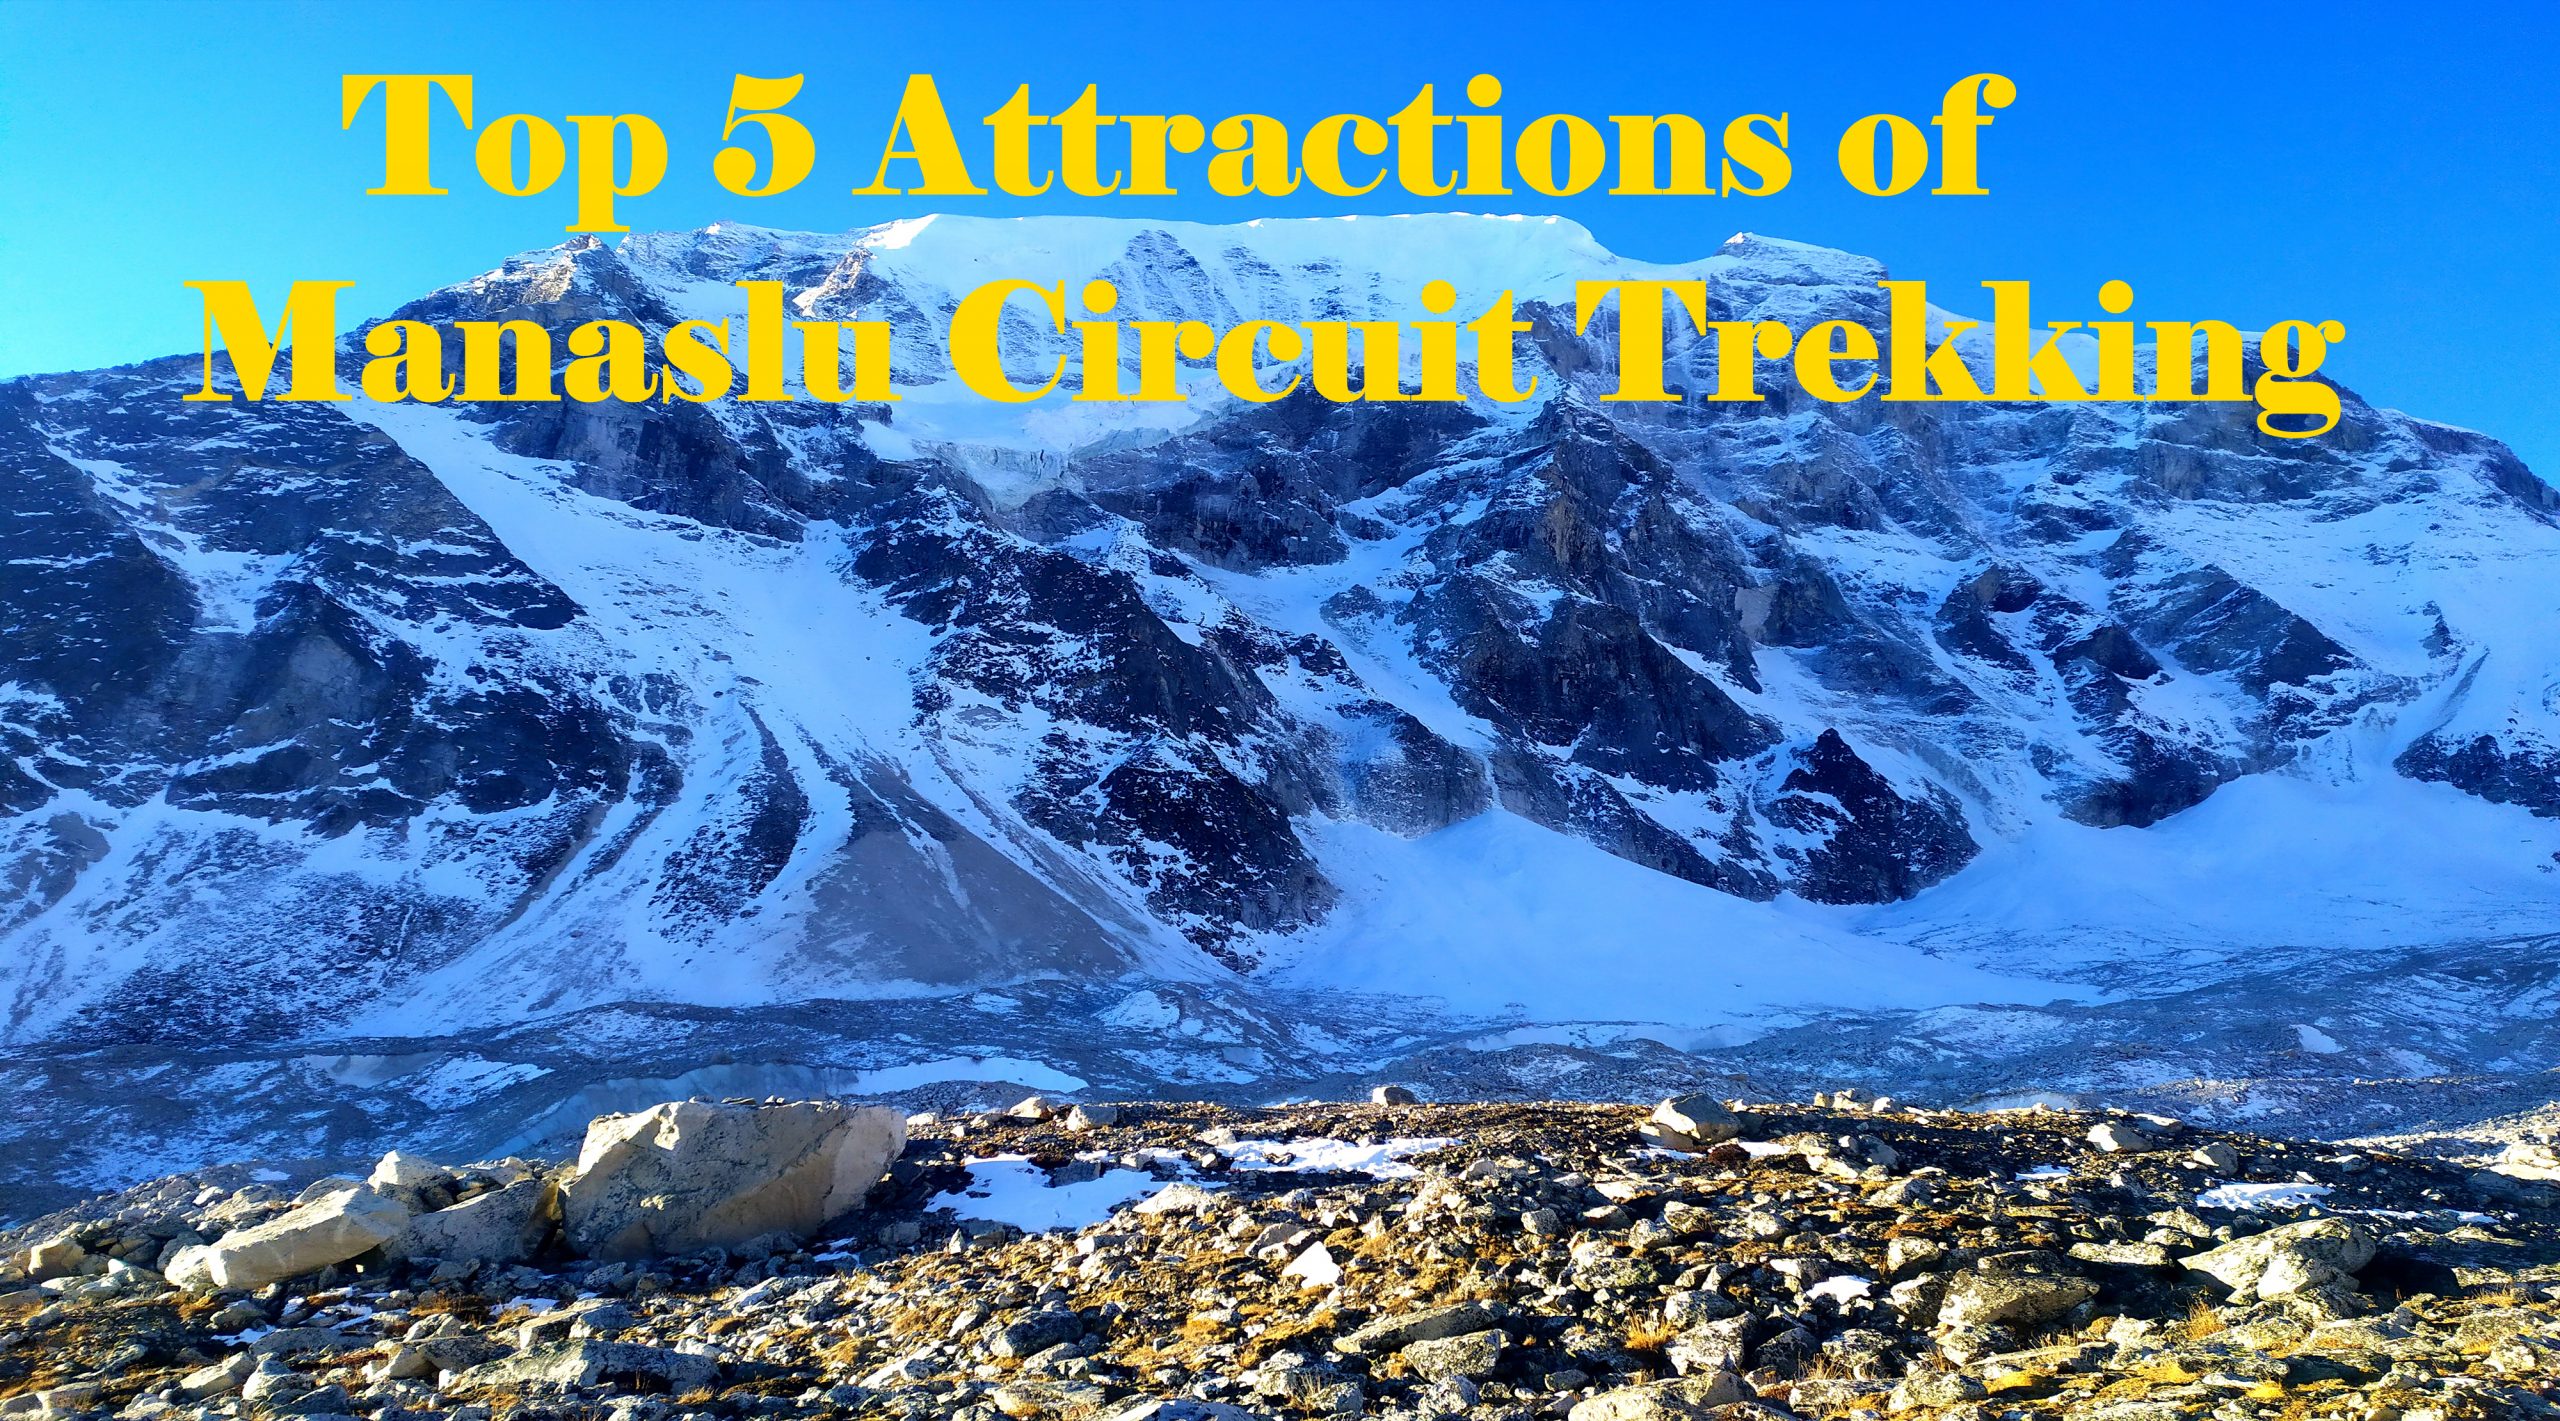 Top 5 Attractions of Manaslu Circuit Trekking